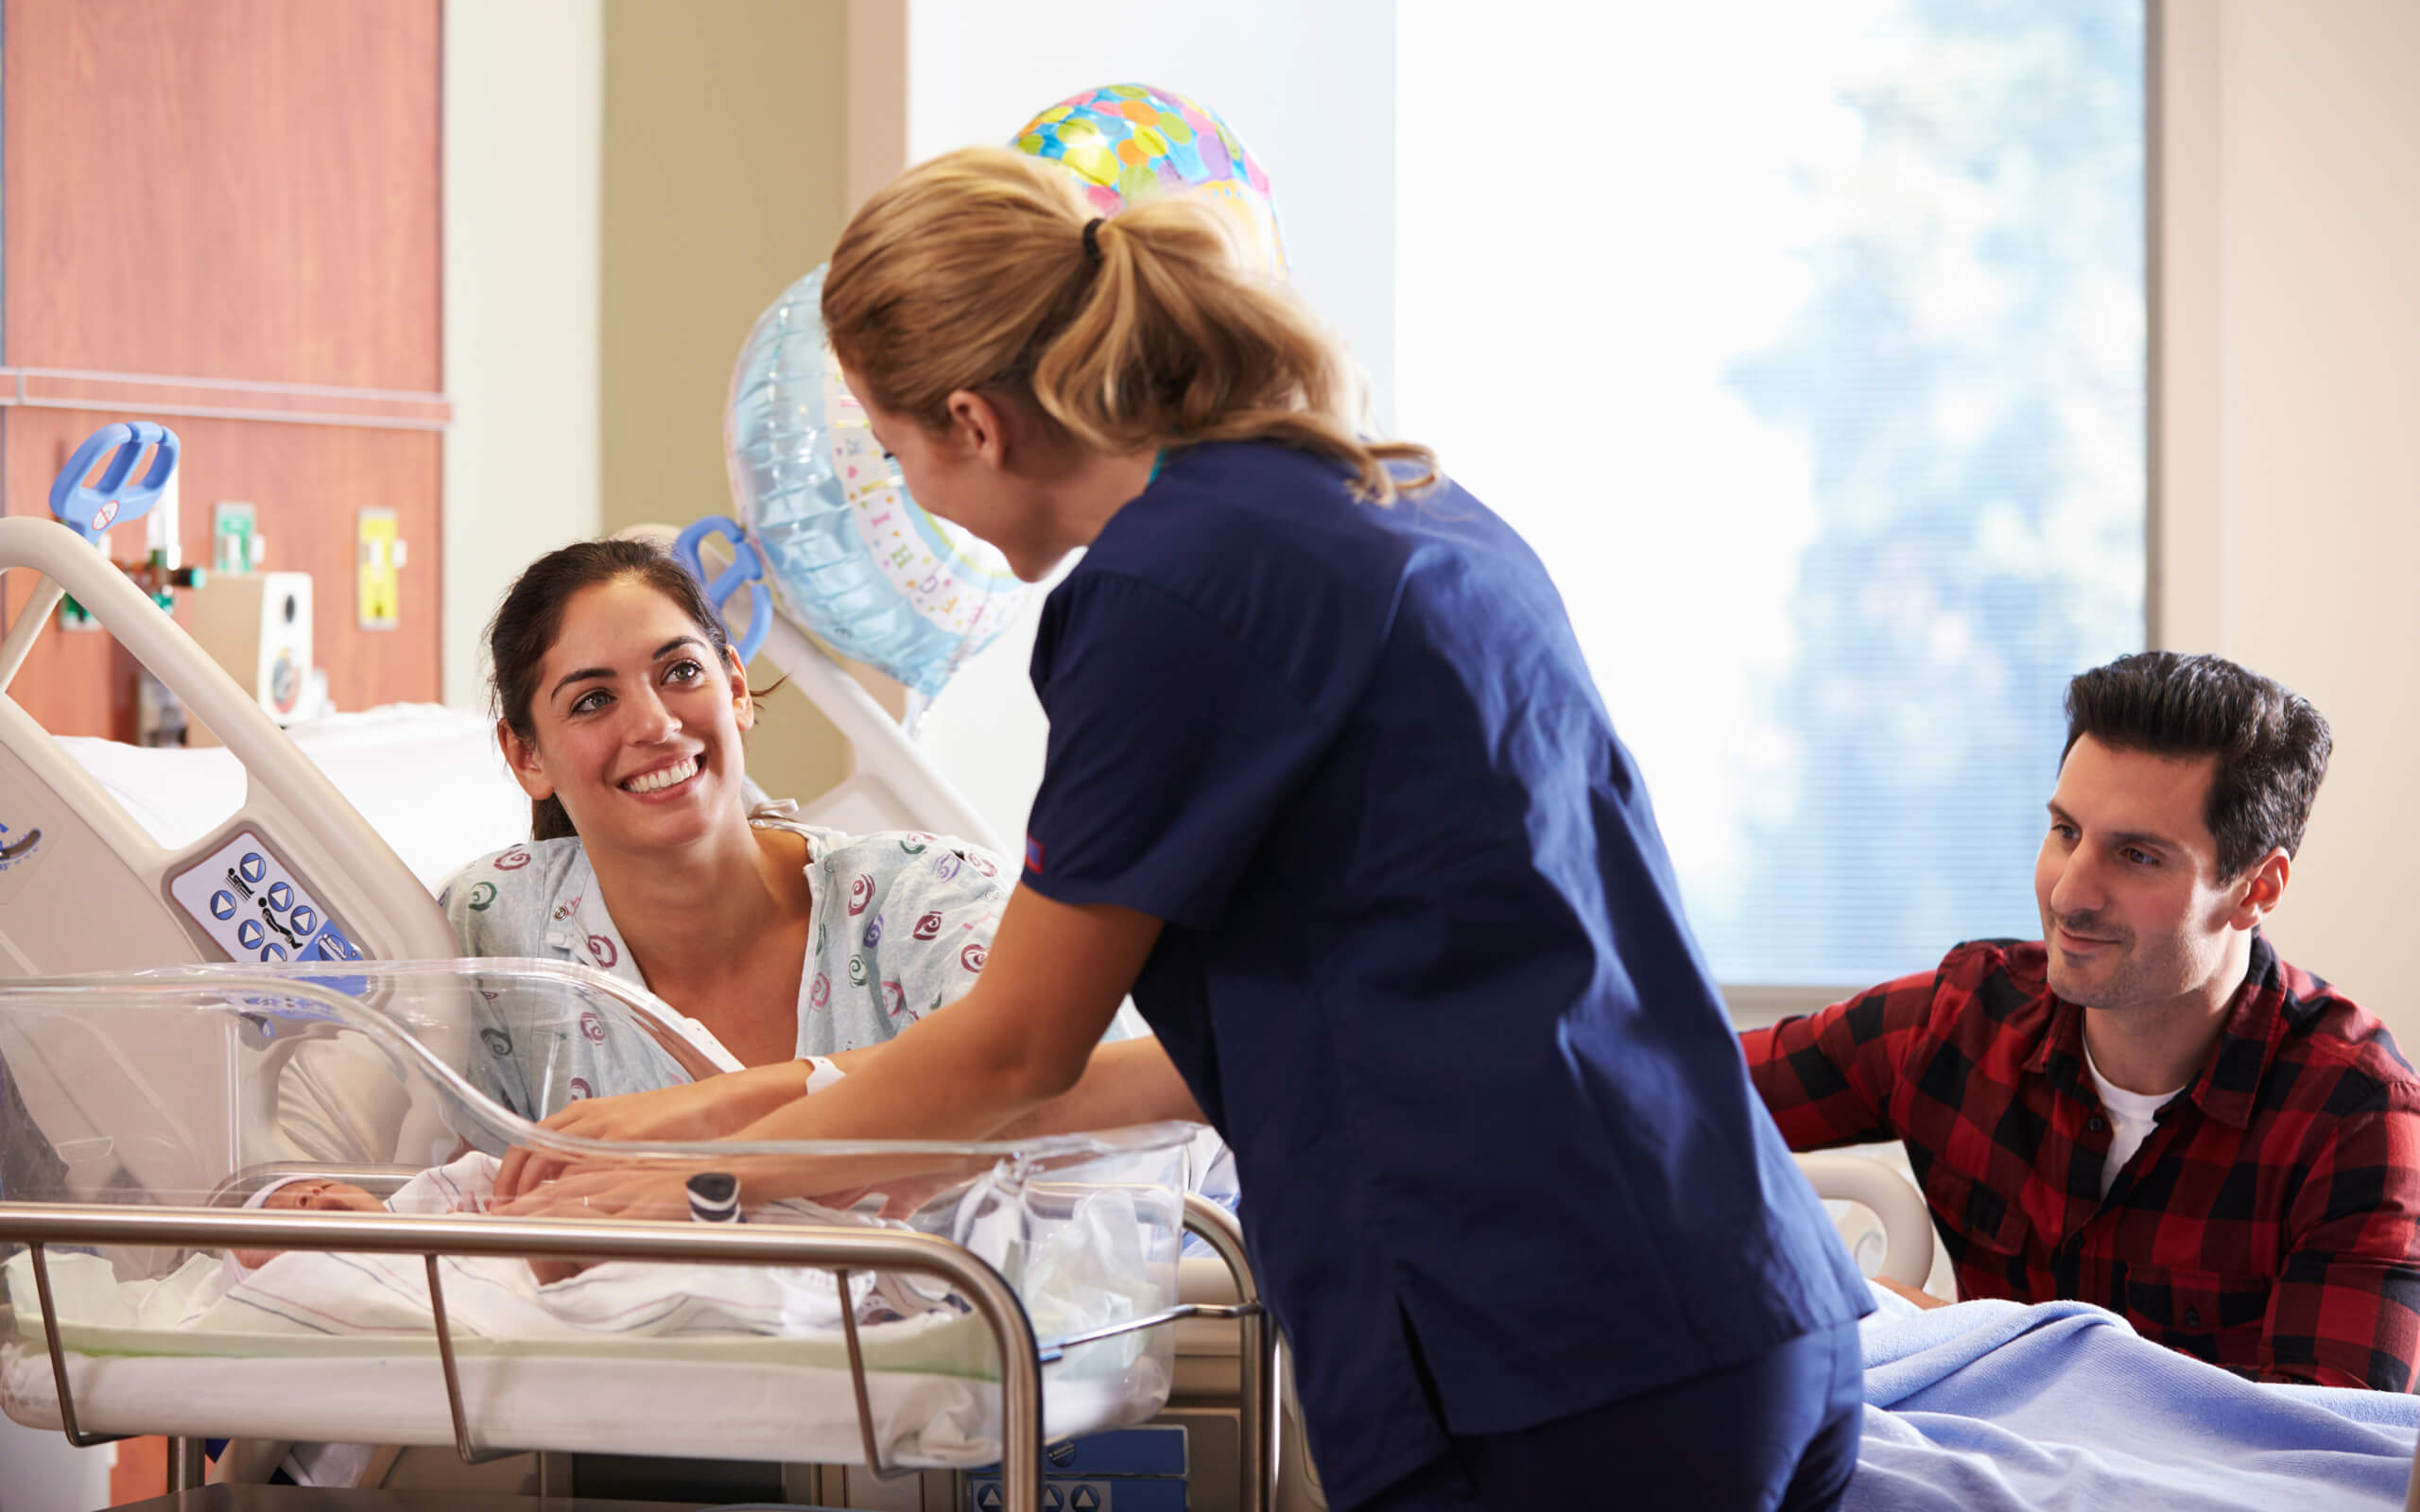 Maternity Care Assistant | Maternity Care Assistant speaking to Mum and baby